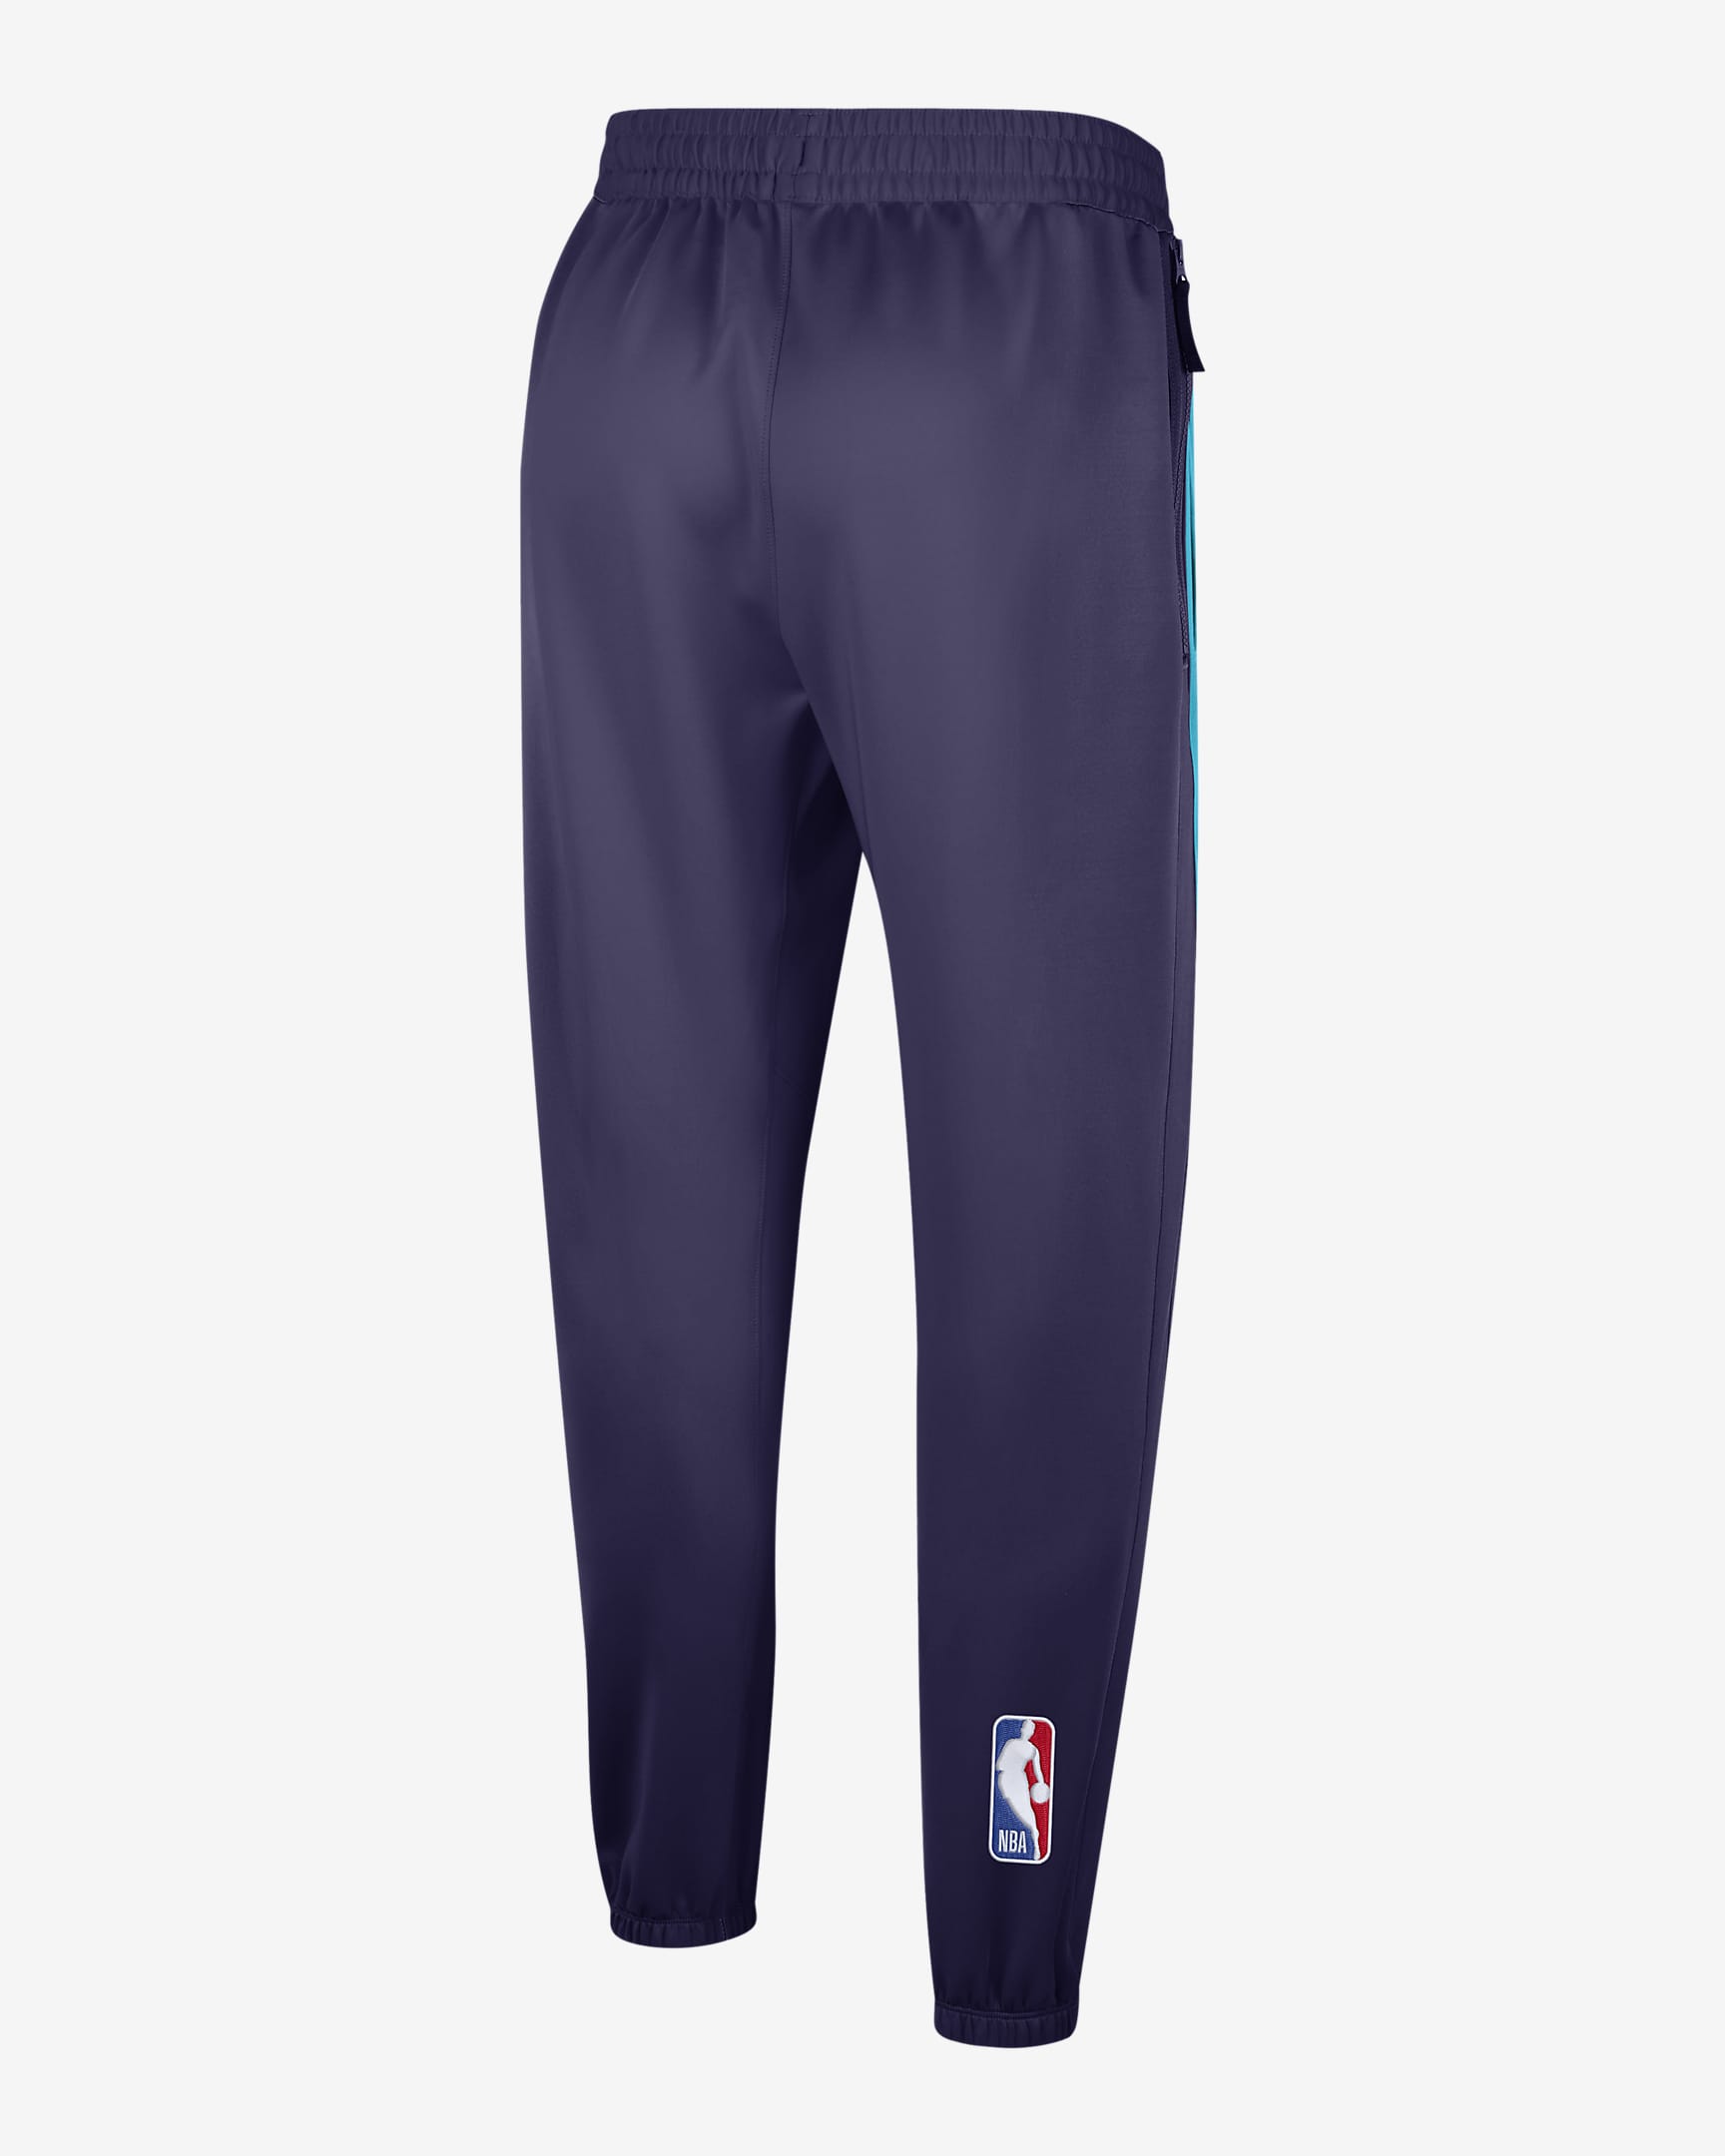 Phoenix Suns Showtime City Edition Men's Nike Dri-FIT NBA Trousers. Nike BG